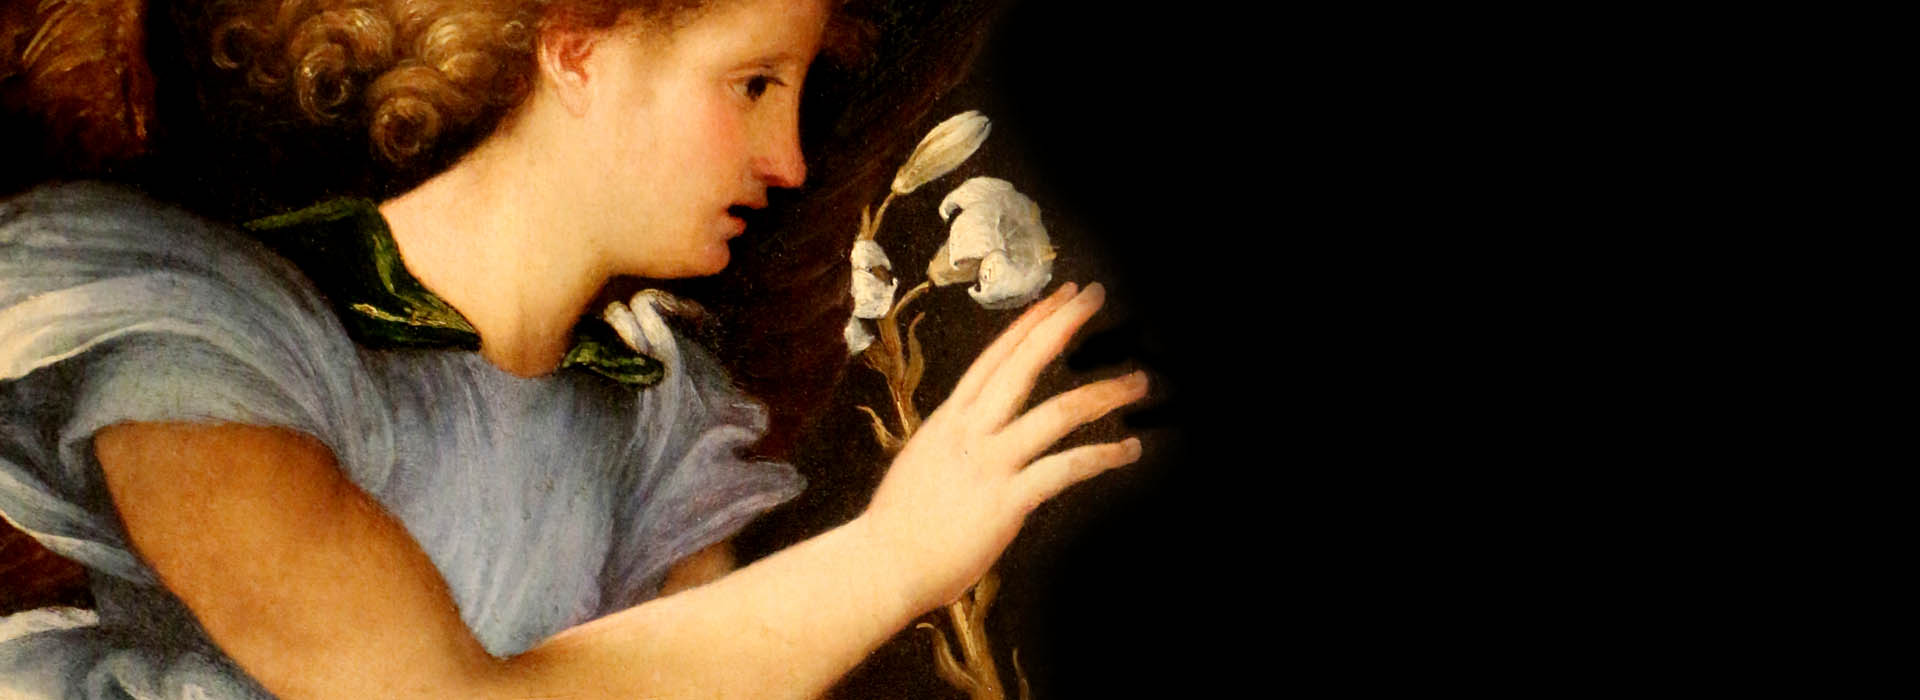 Lorenzo Lotto nelle Marche. Il Rinascimento nelle Marche